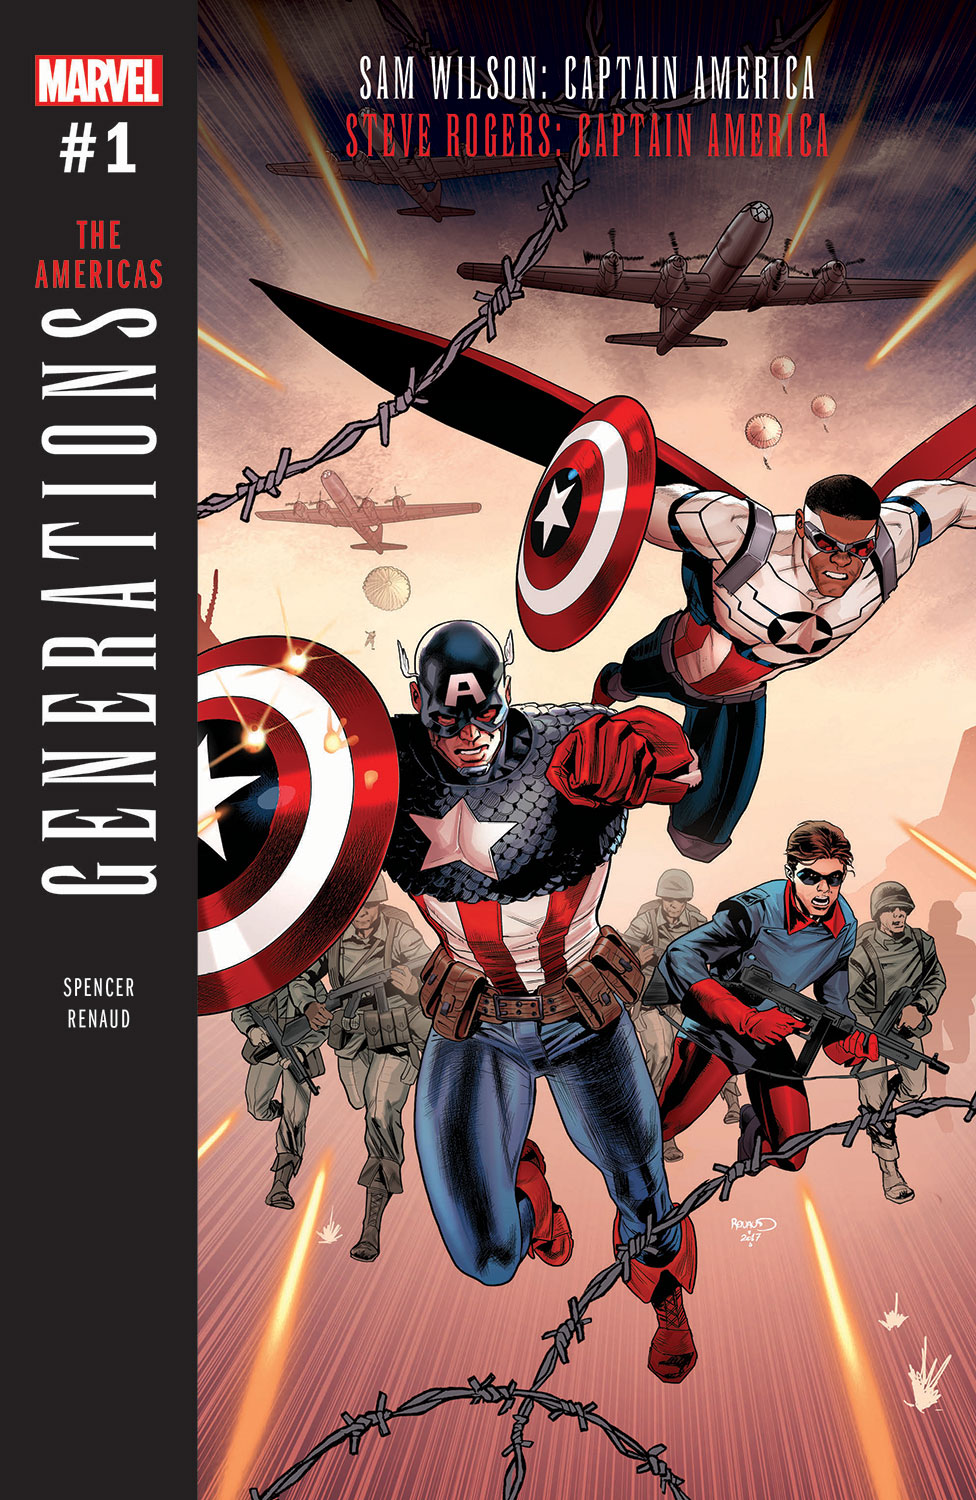 Marvel Comics’ GENERATIONS